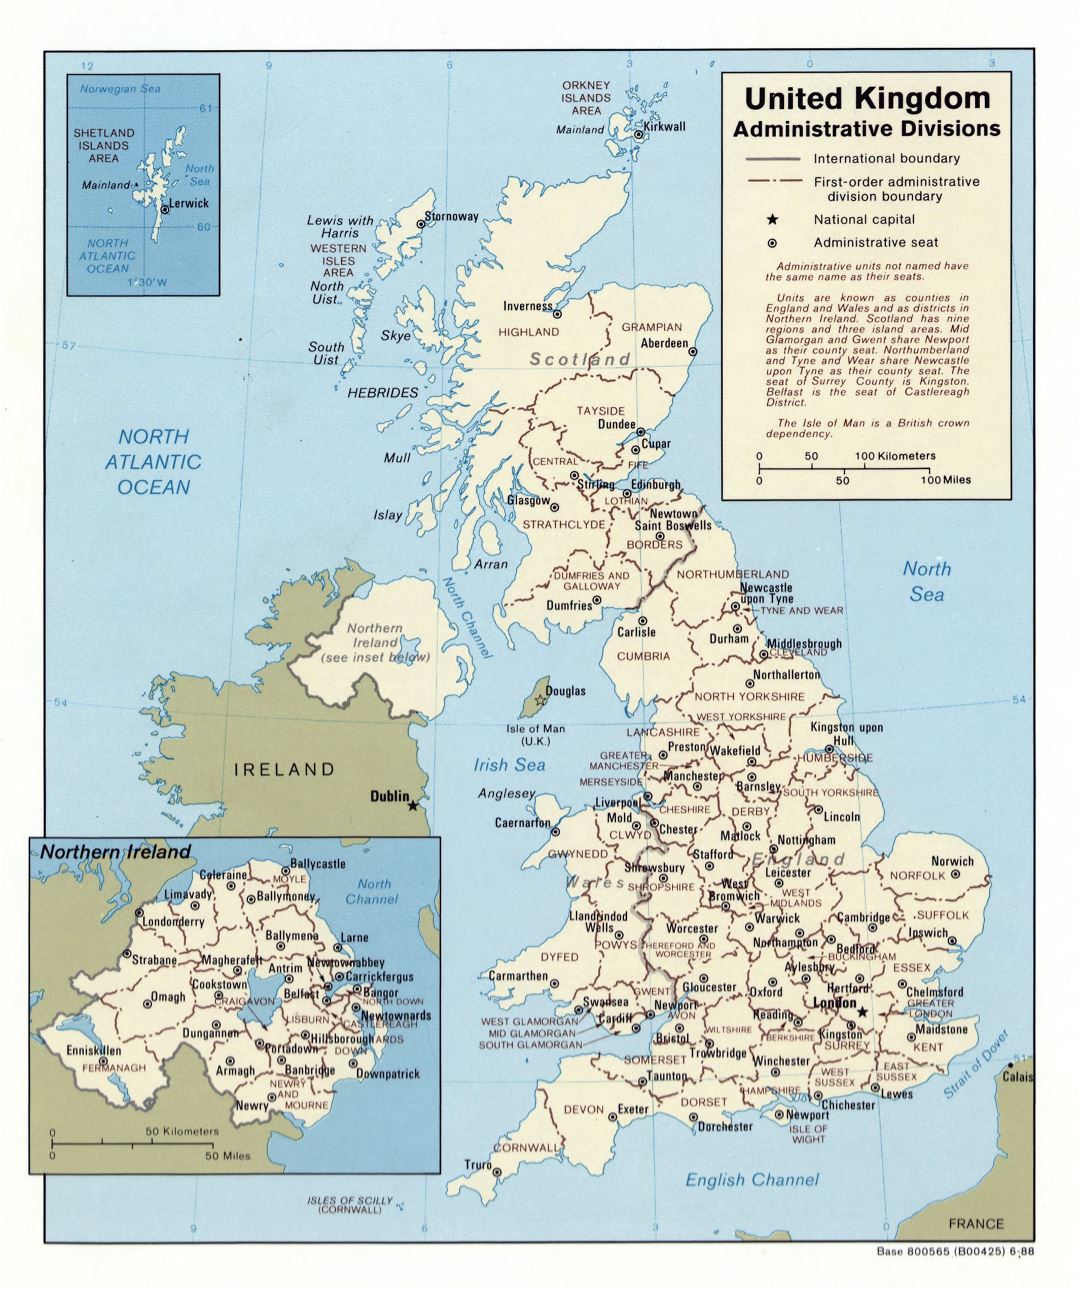 Grande detallado mapa de administrativas divisiones del Reino Unido - 1988